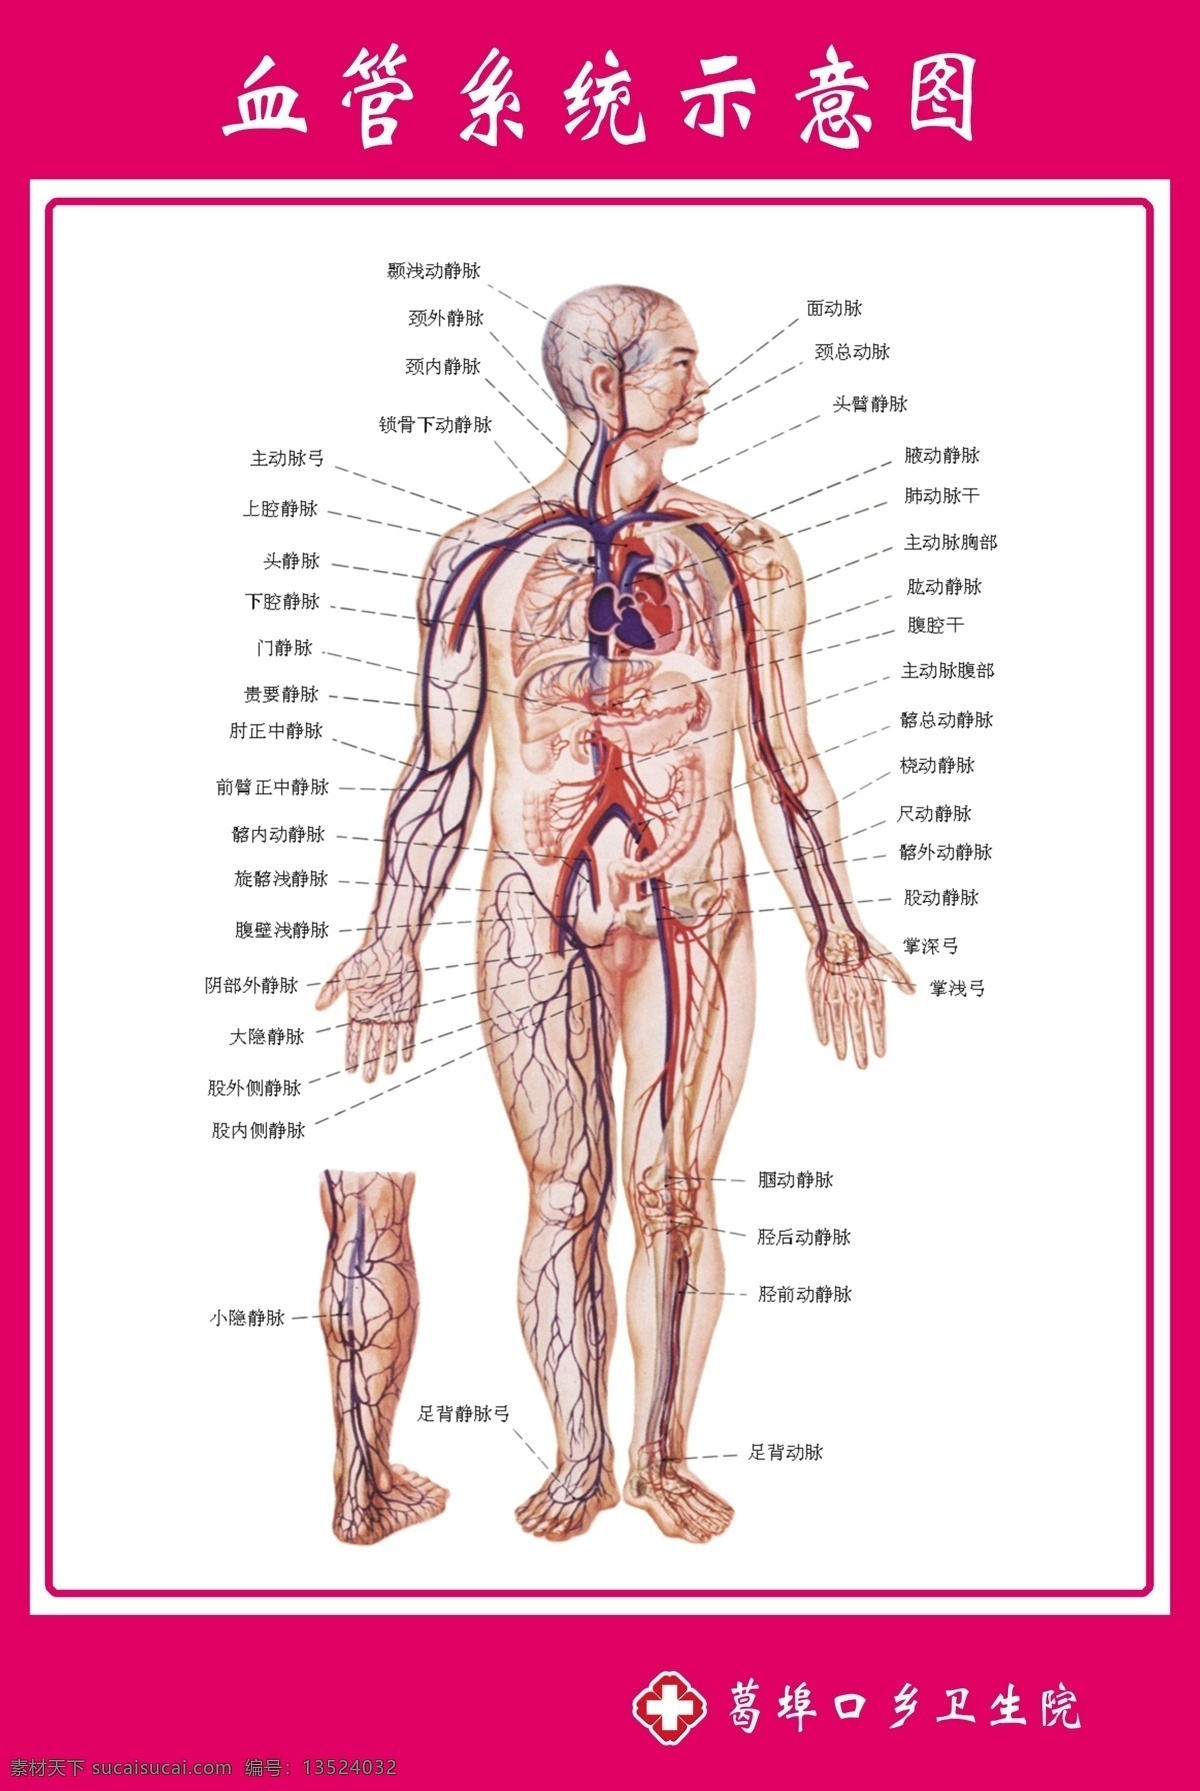 血管 系统 示意图 血管系统 解剖图 医院示意图 医院解剖图 门诊示意图 源文件